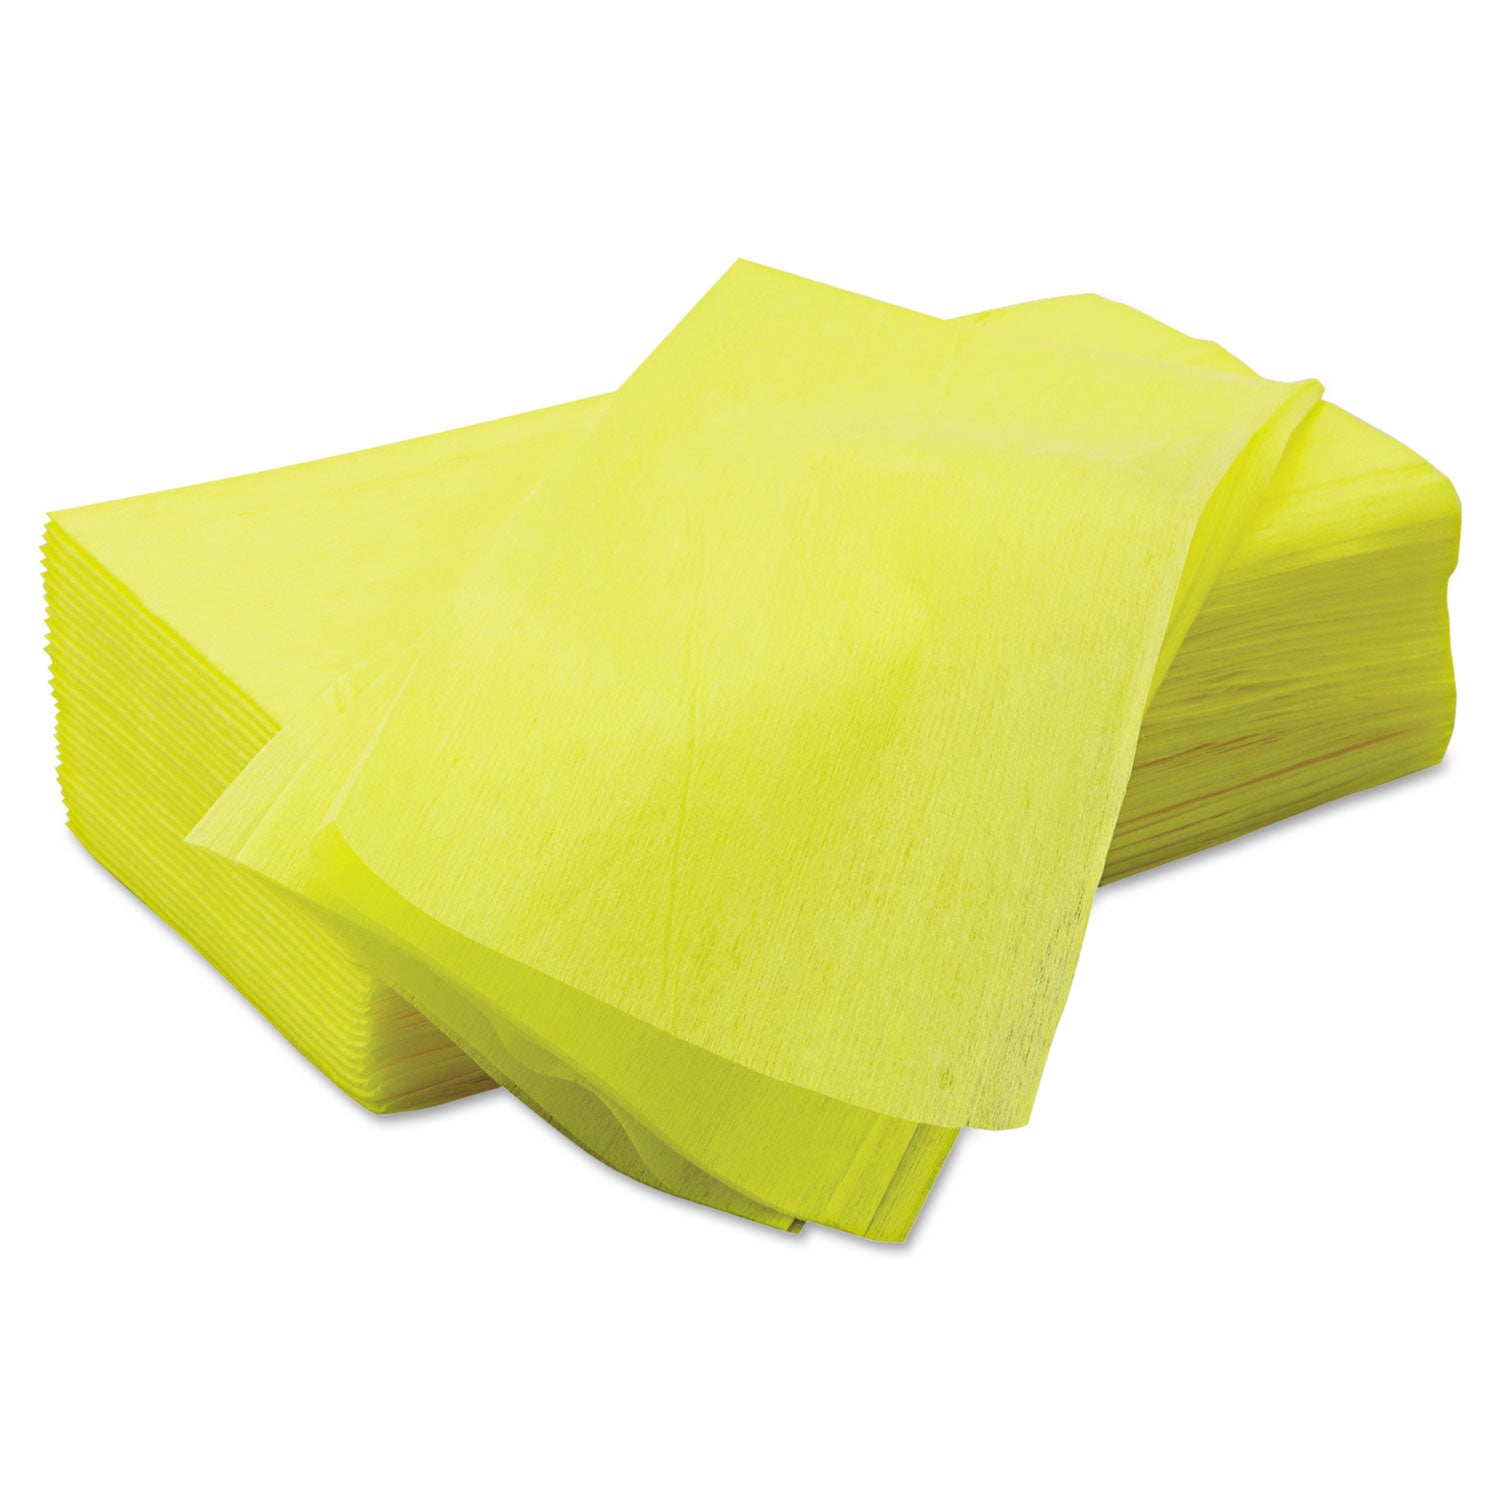 Masslinn Dust Cloths, 1-Ply, 24 x 24, Unscented, Yellow, 30/Bag, 5 Bags/Carton - 